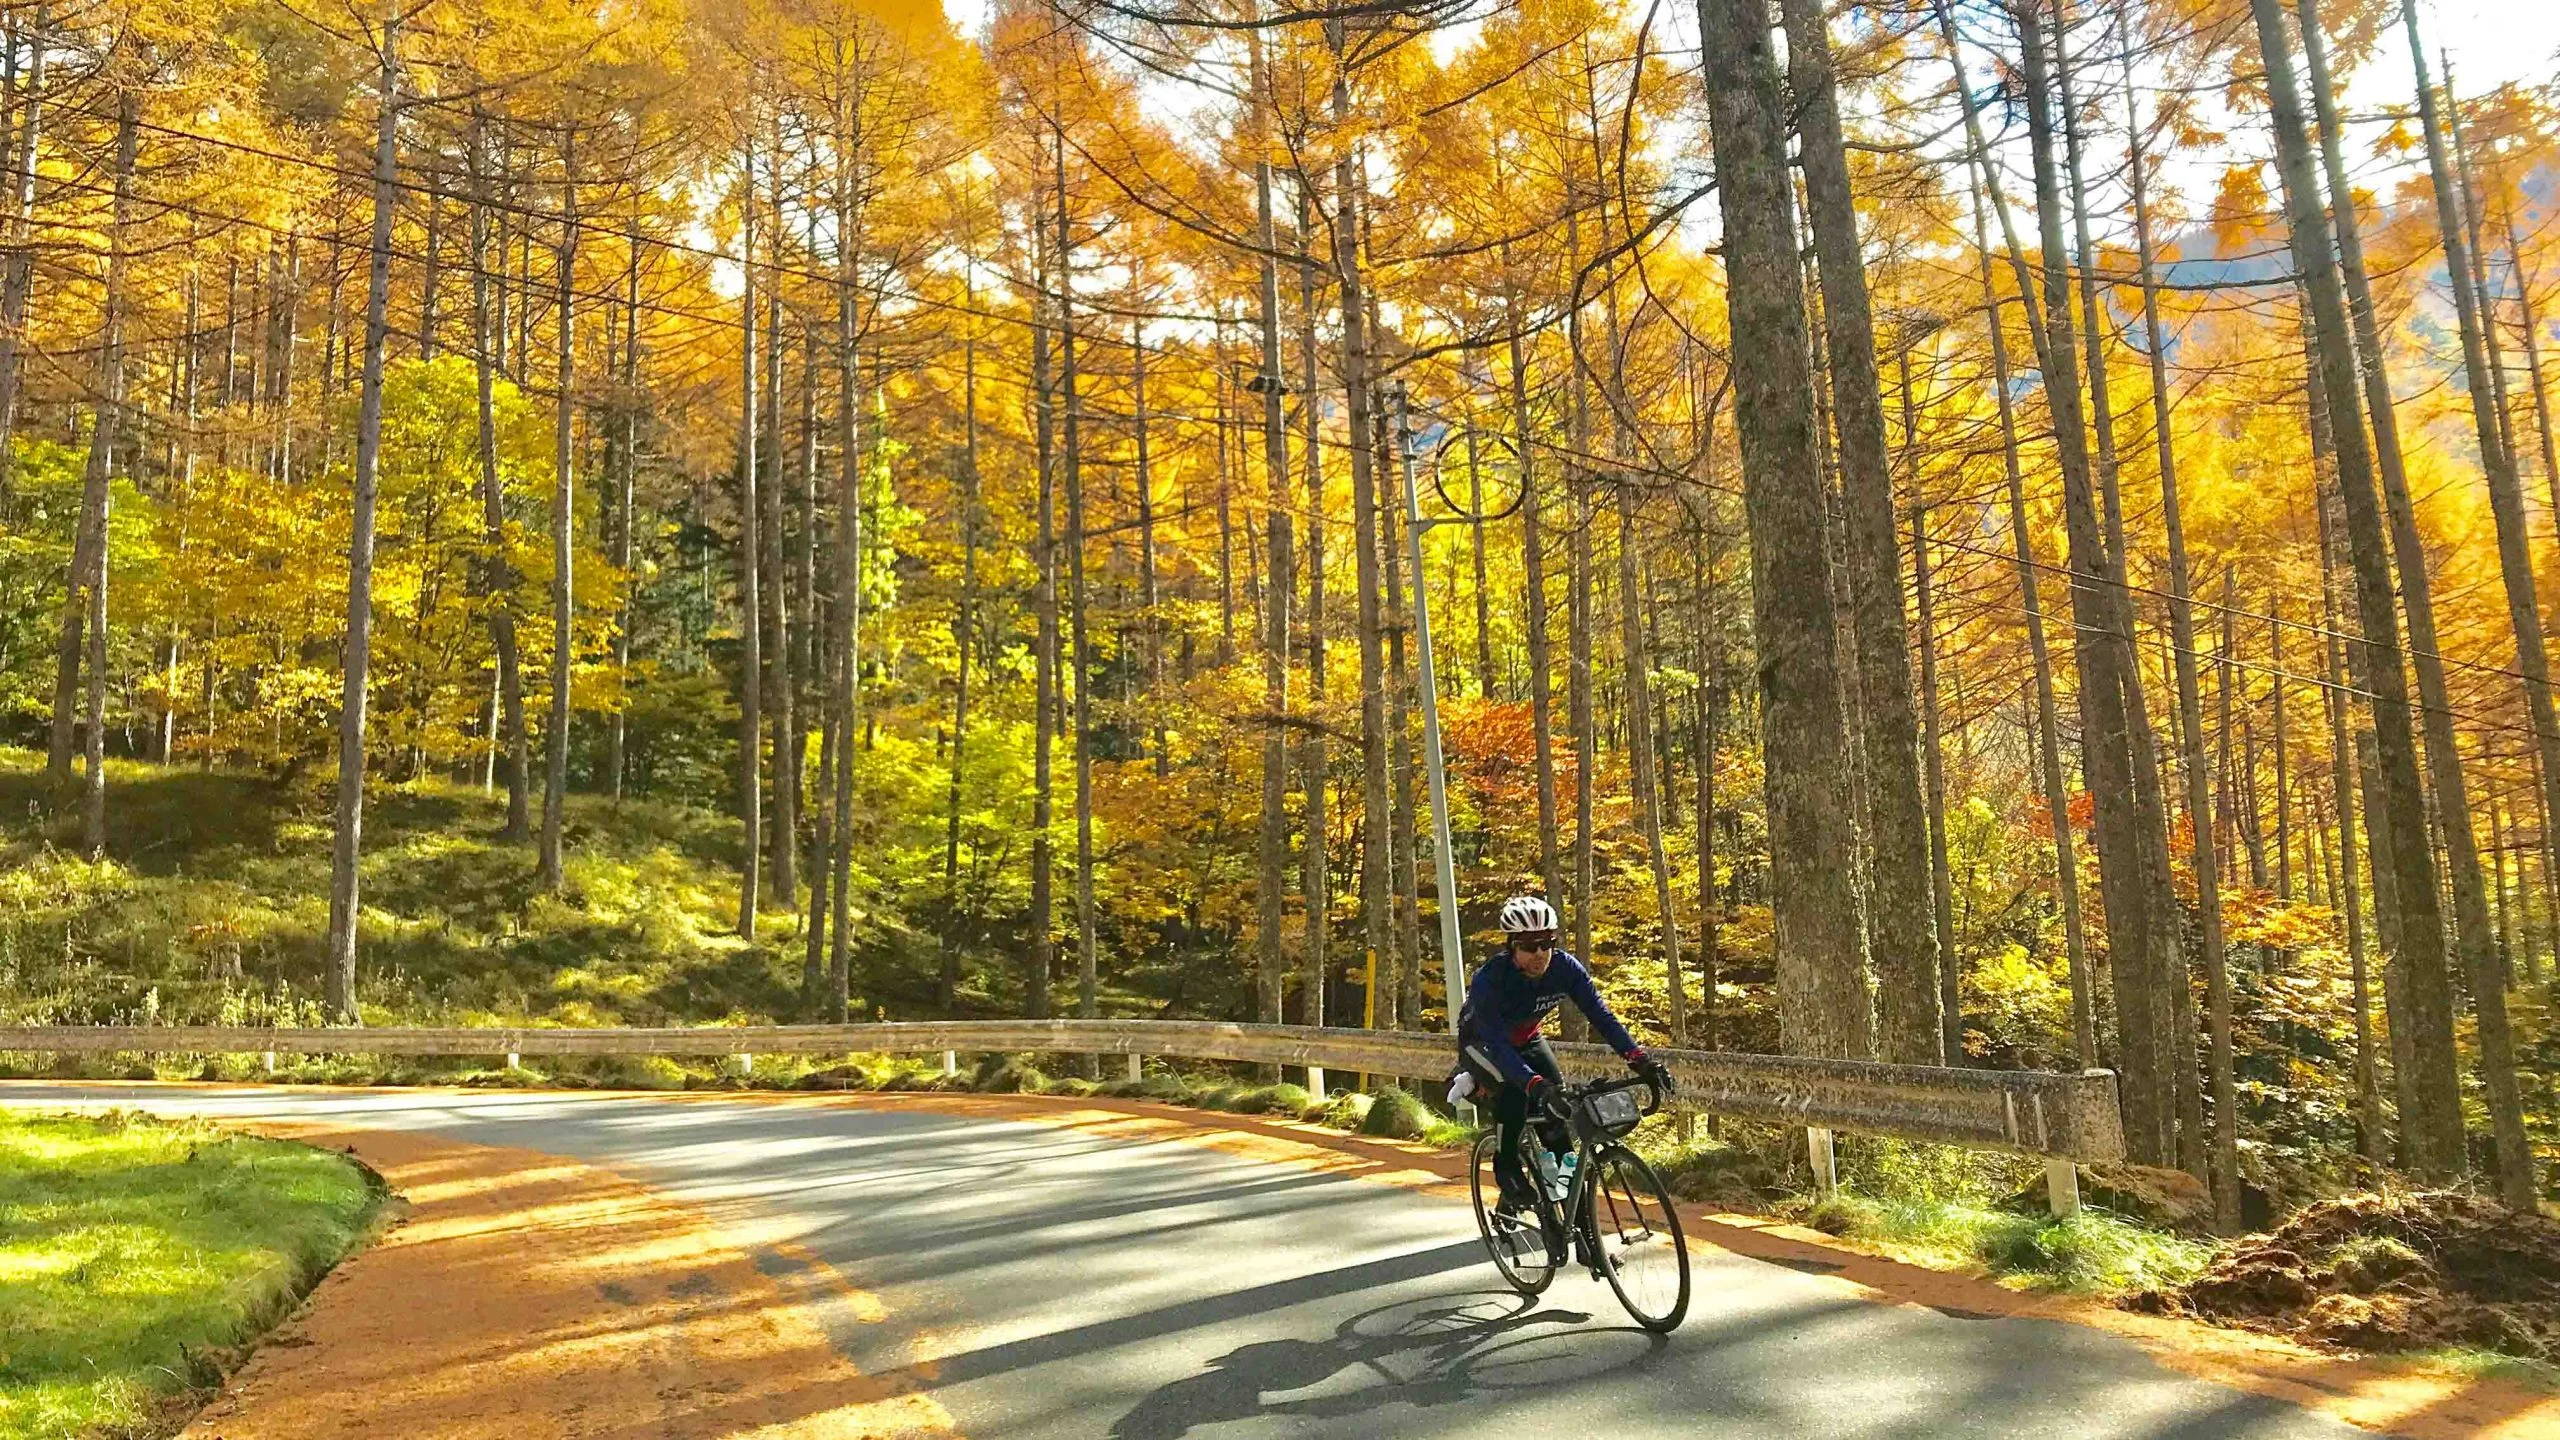 Riding through Japan in Autumn/Fall